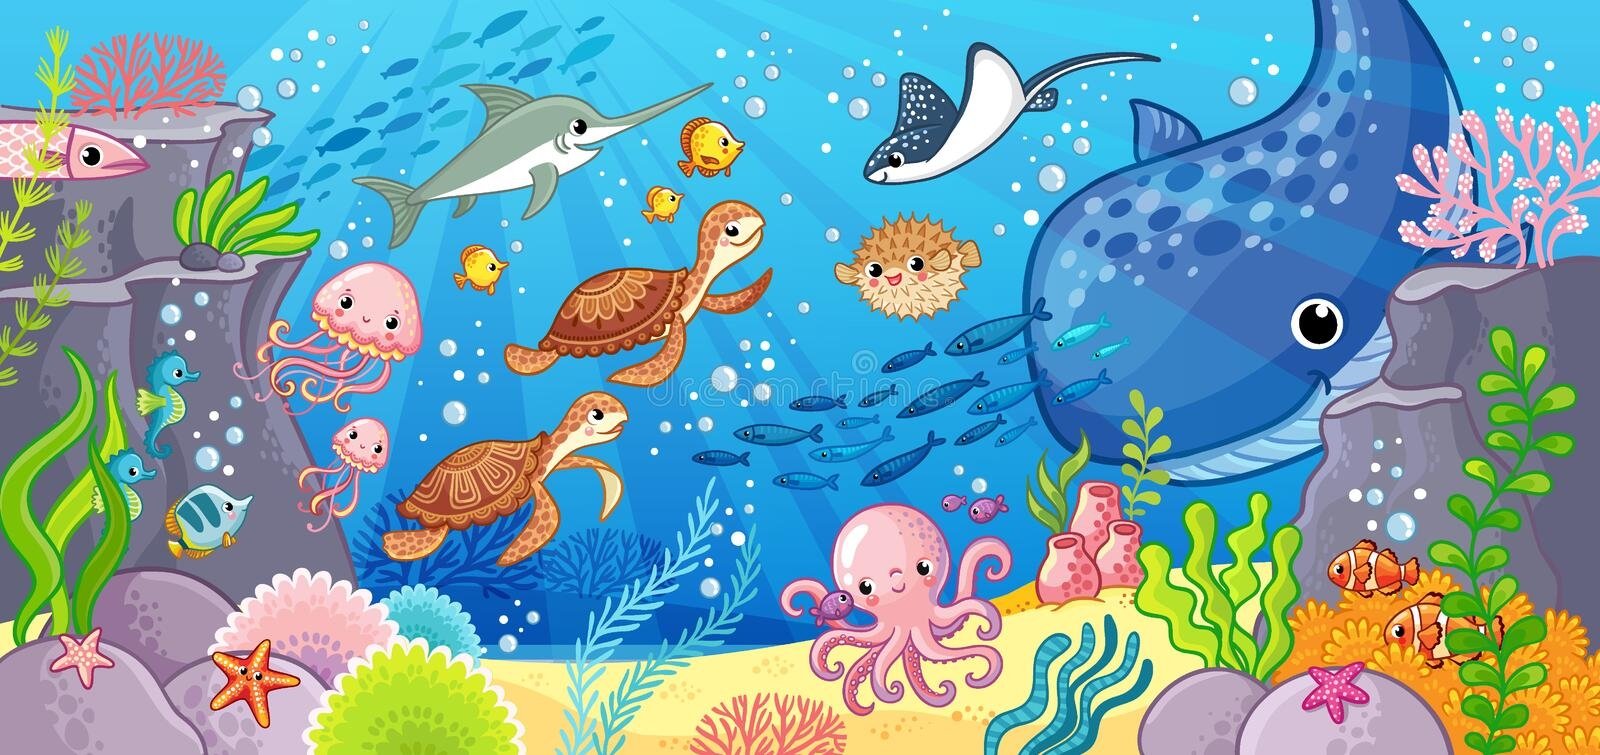 День водных животных в детском саду. Подводный мир для дошкольников. Морские обитатели для детей. Подводные обитатели для детей. Морской мир иллюстрация.